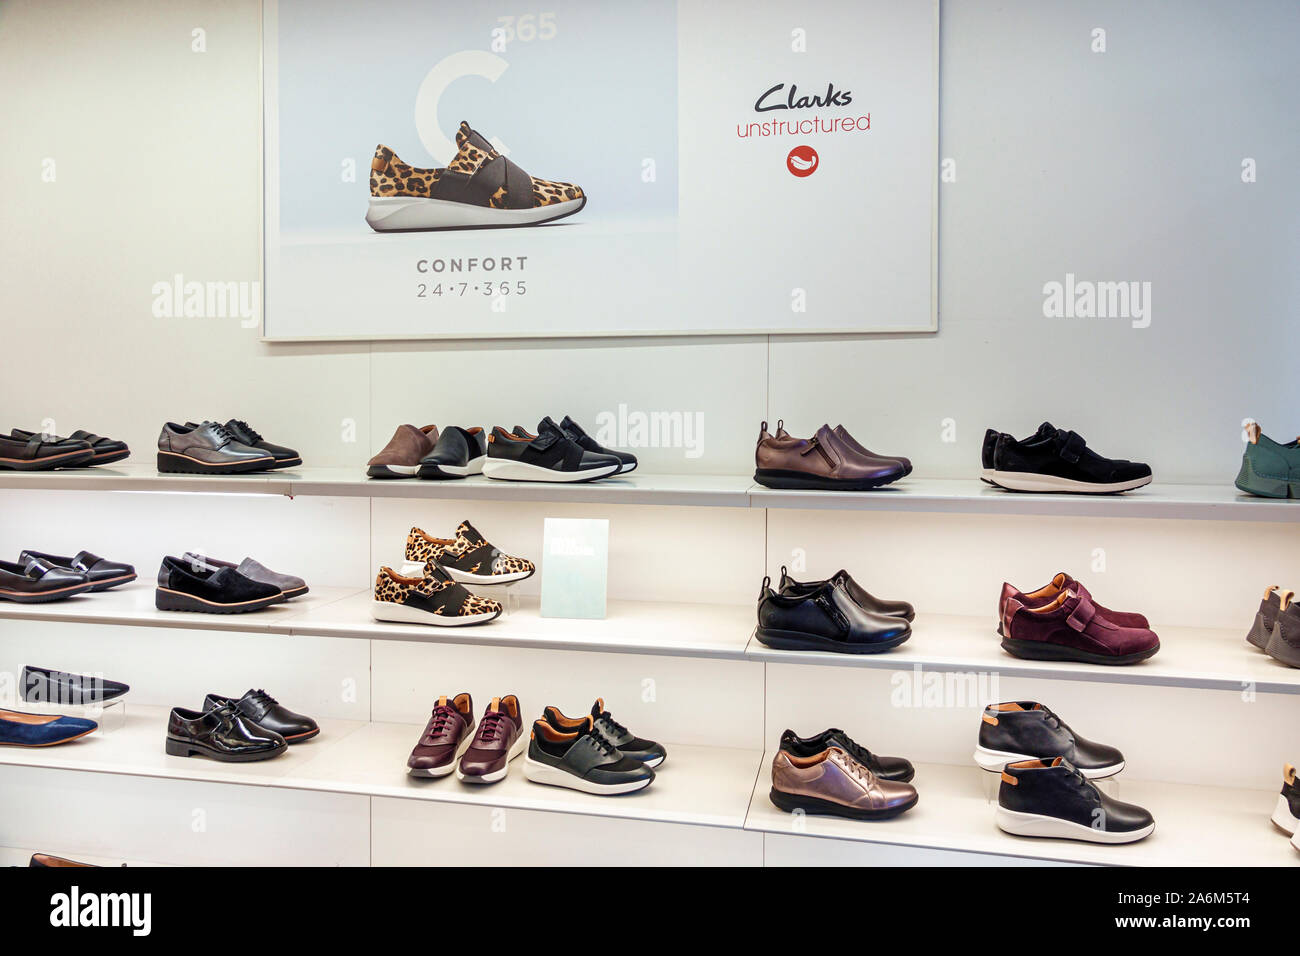 clarks shoes shops